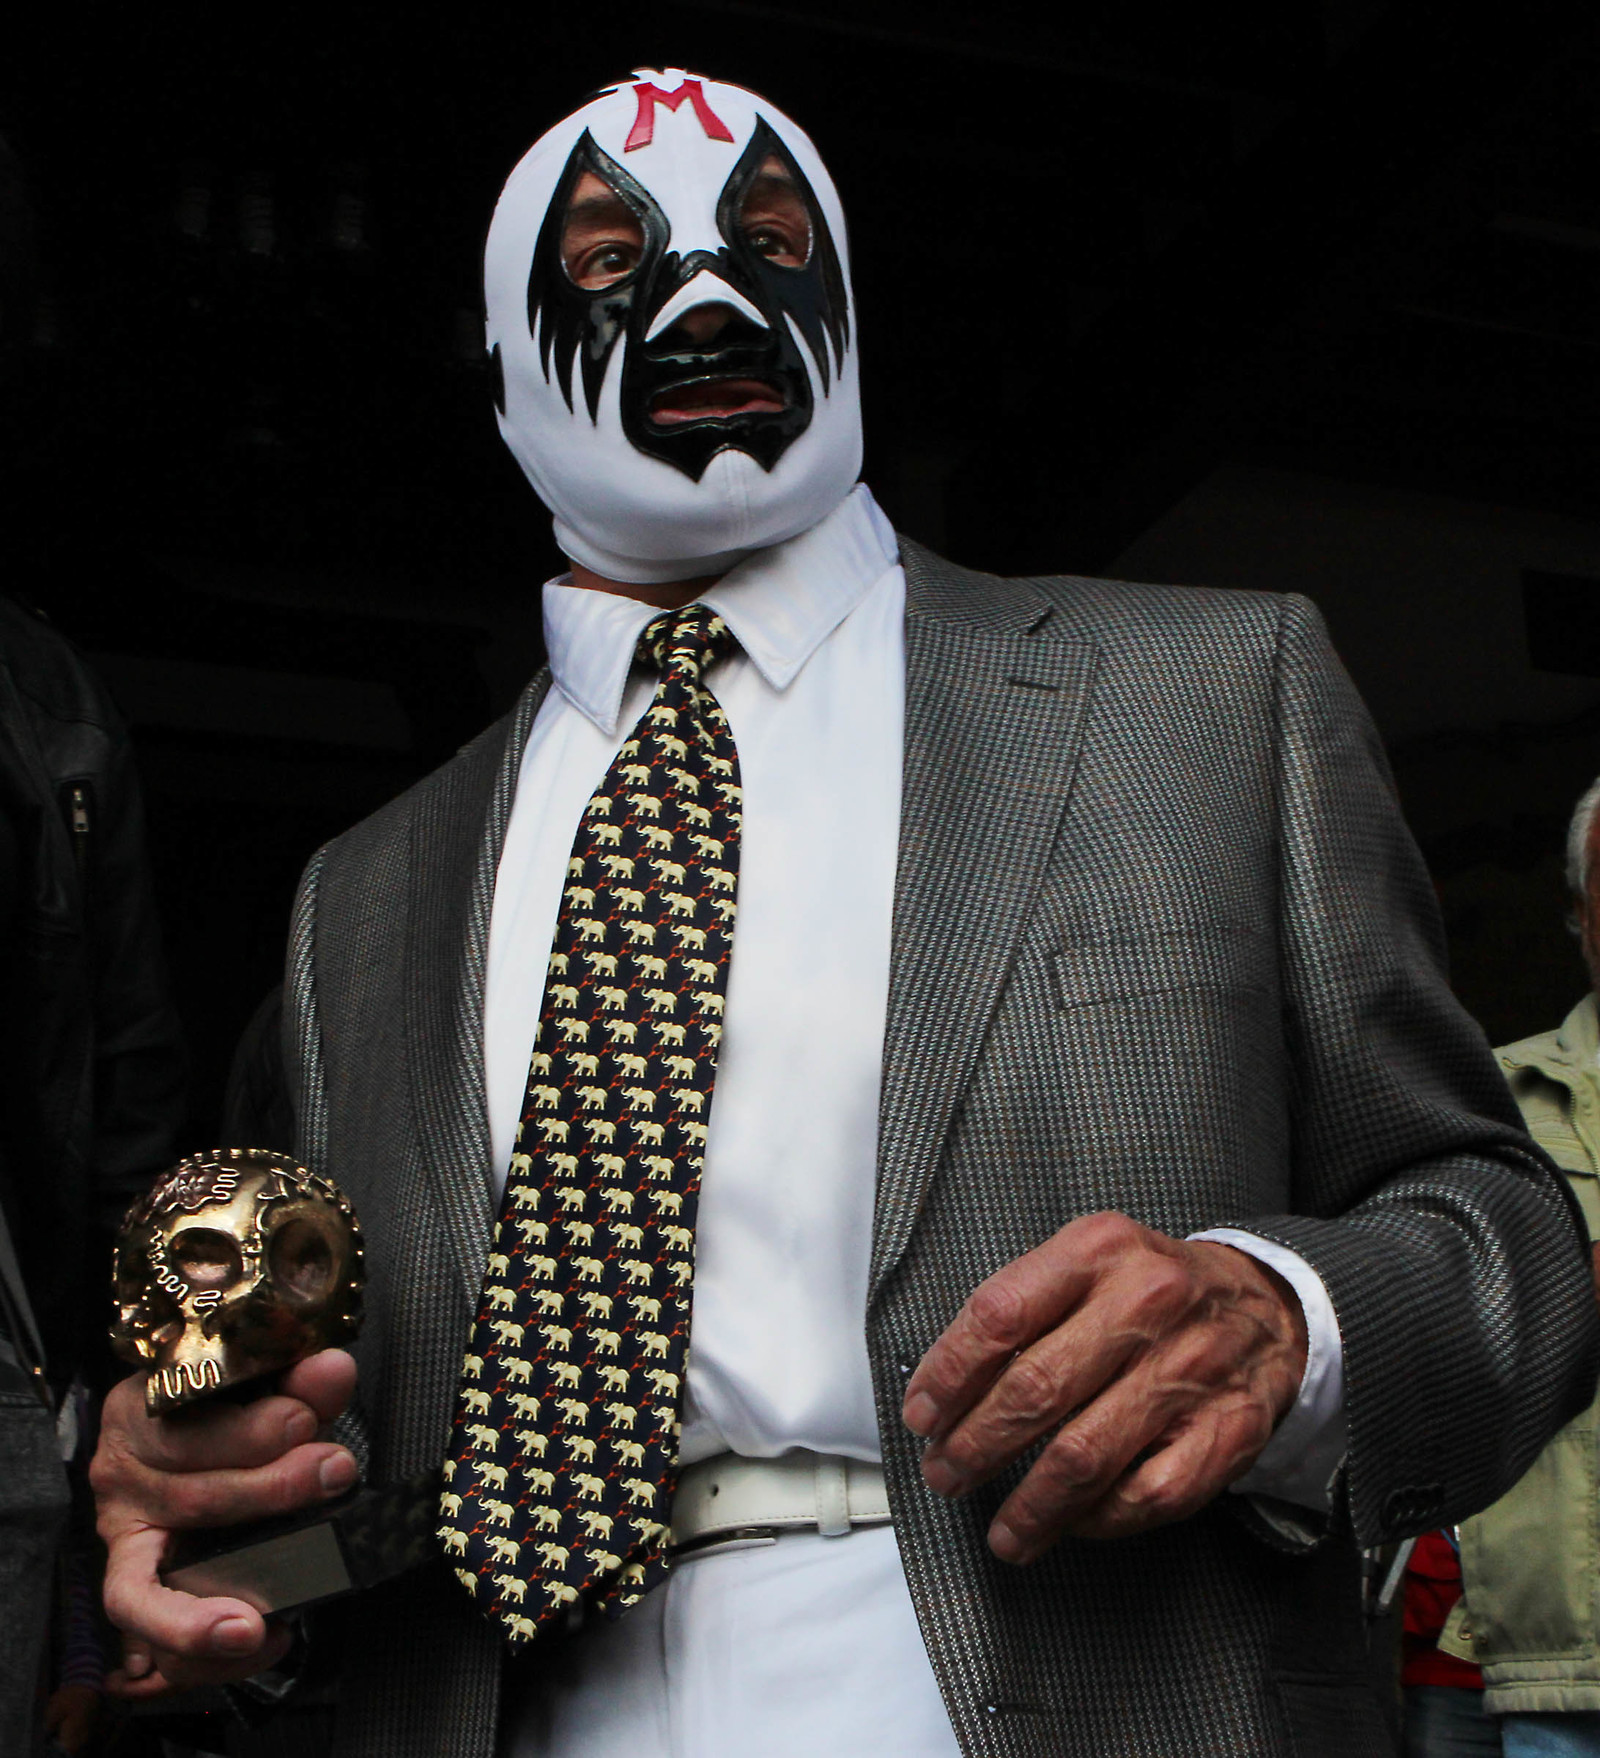 El legendario luchador Mil Máscaras luchará en Torreón el próximo domingo 10 de marzo en el Auditorio Municipal.